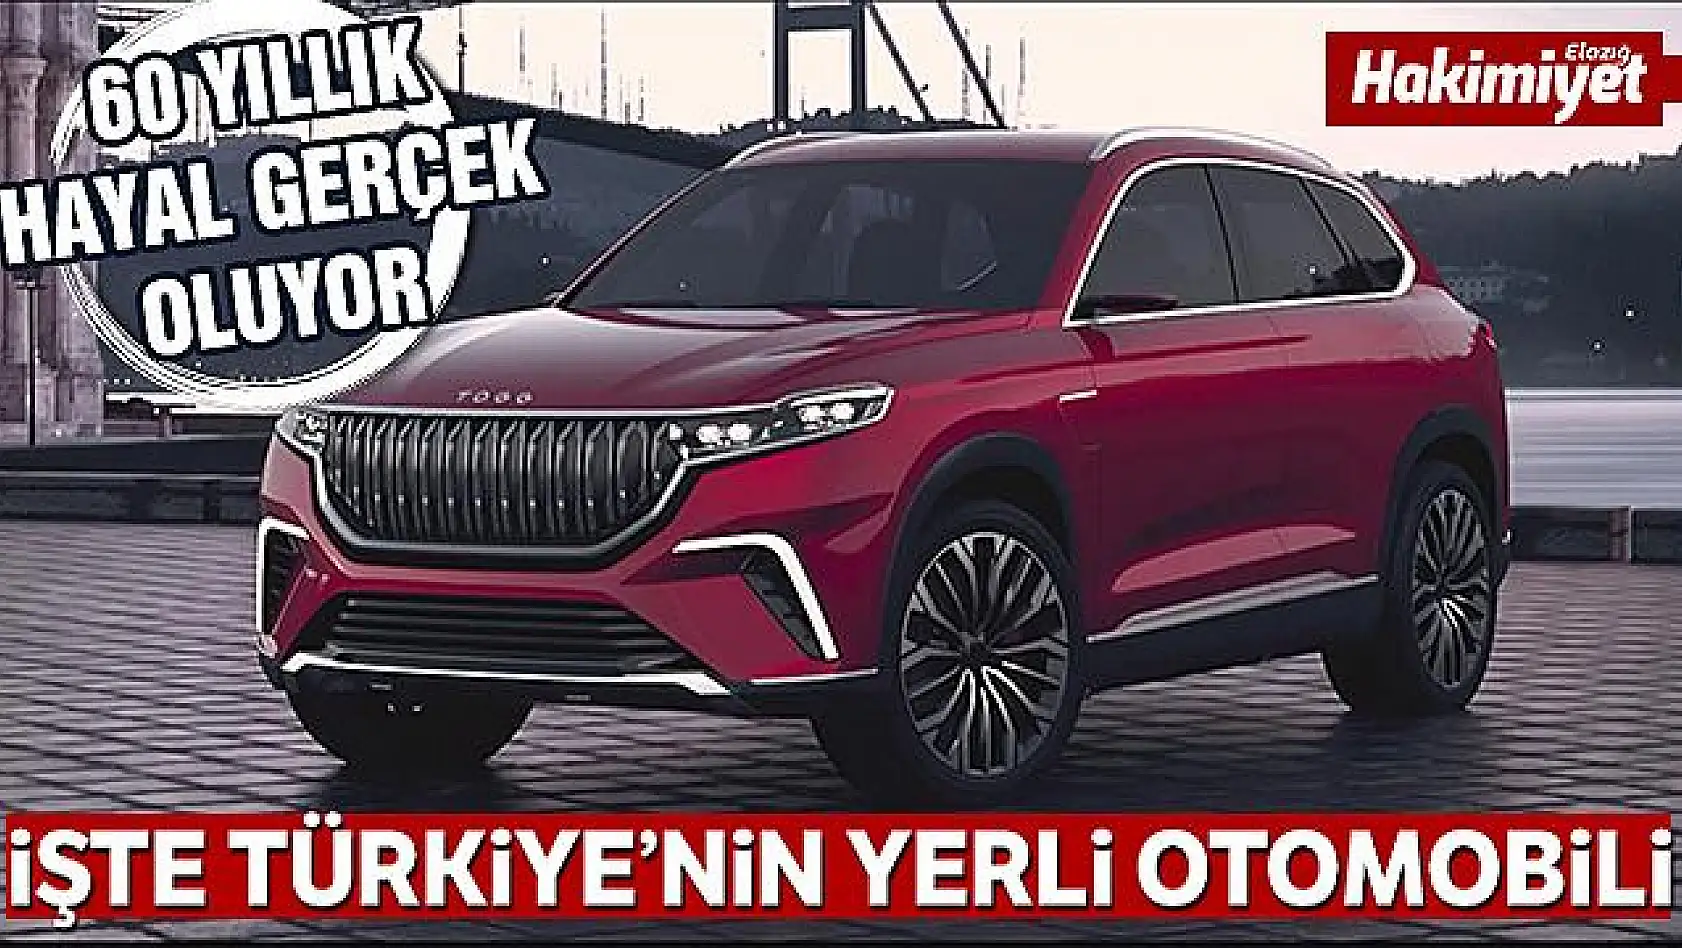 Türkiye'nin otomobili tanıtılıyor